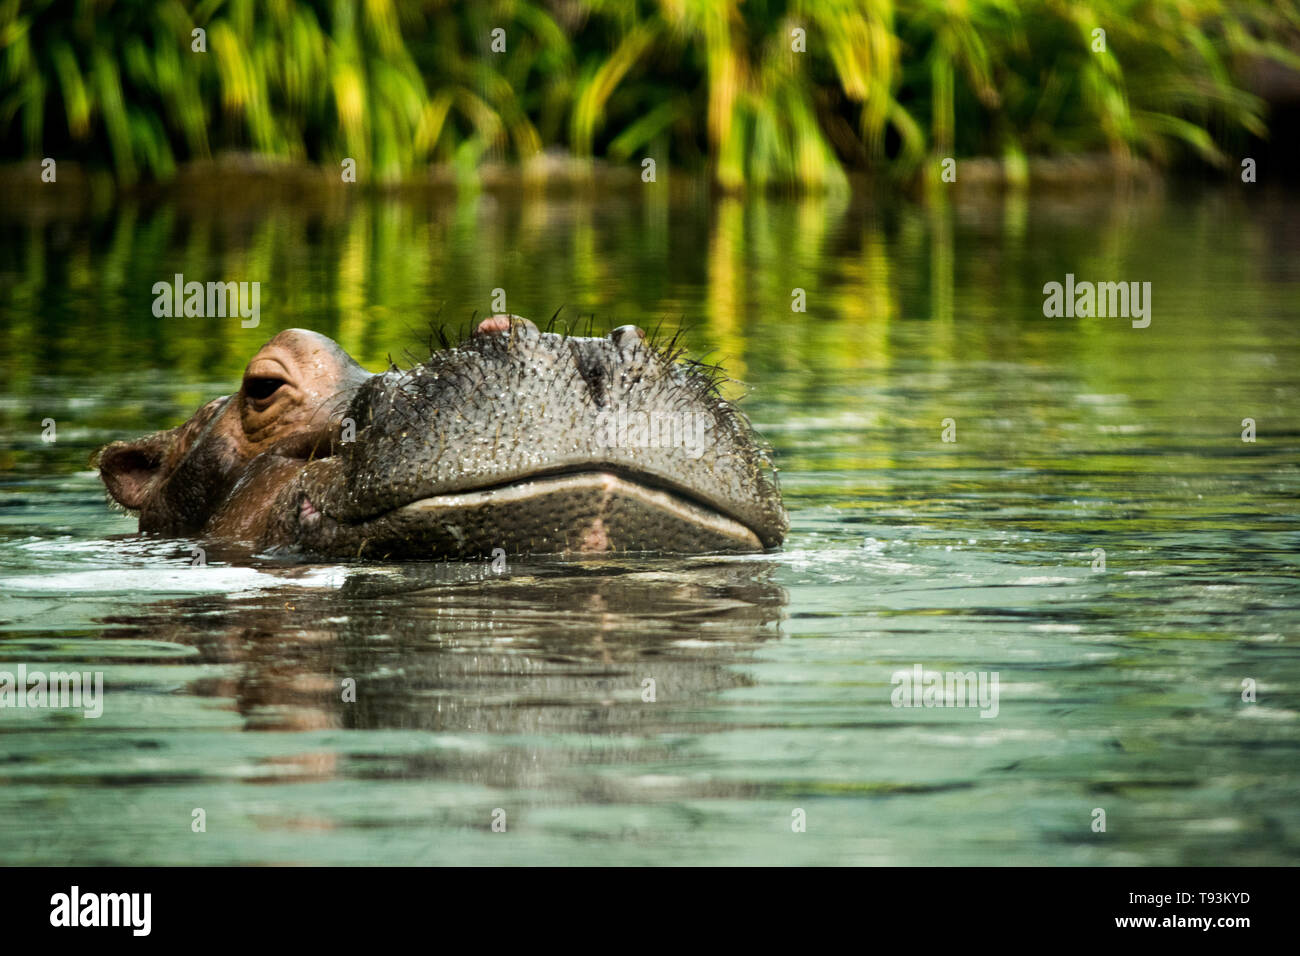 Hippo natation dans l'eau Banque D'Images